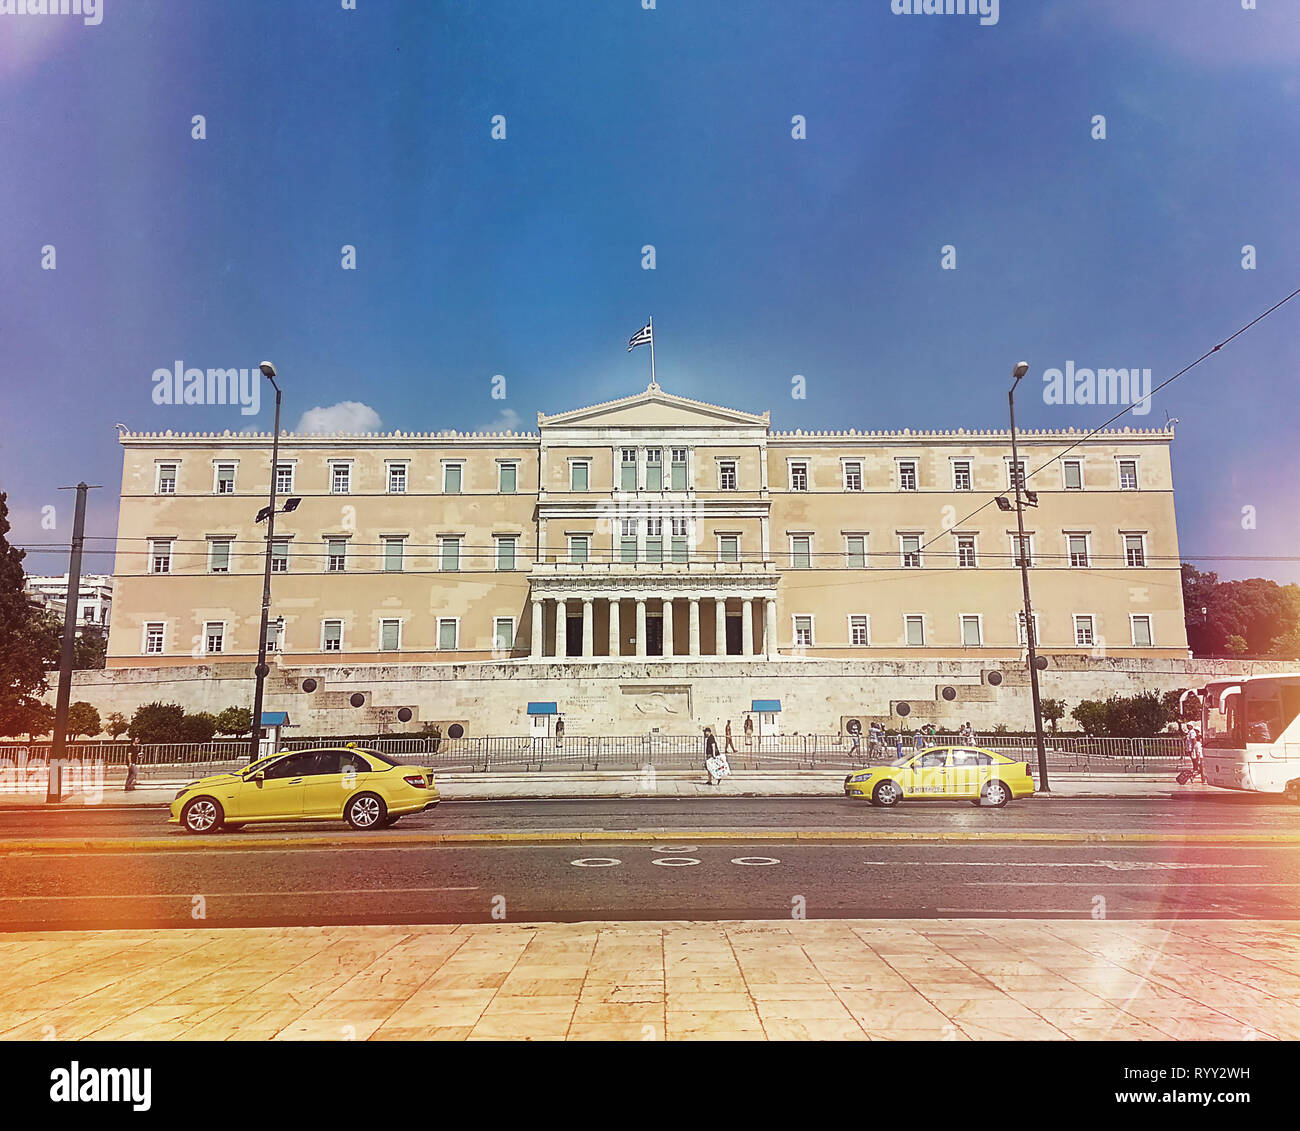 Athènes, Grèce - Octobre 06, 2015. Le bâtiment du Parlement grec à la place Syntagma. Filtre de couleurs lumineuses chaudes. Banque D'Images